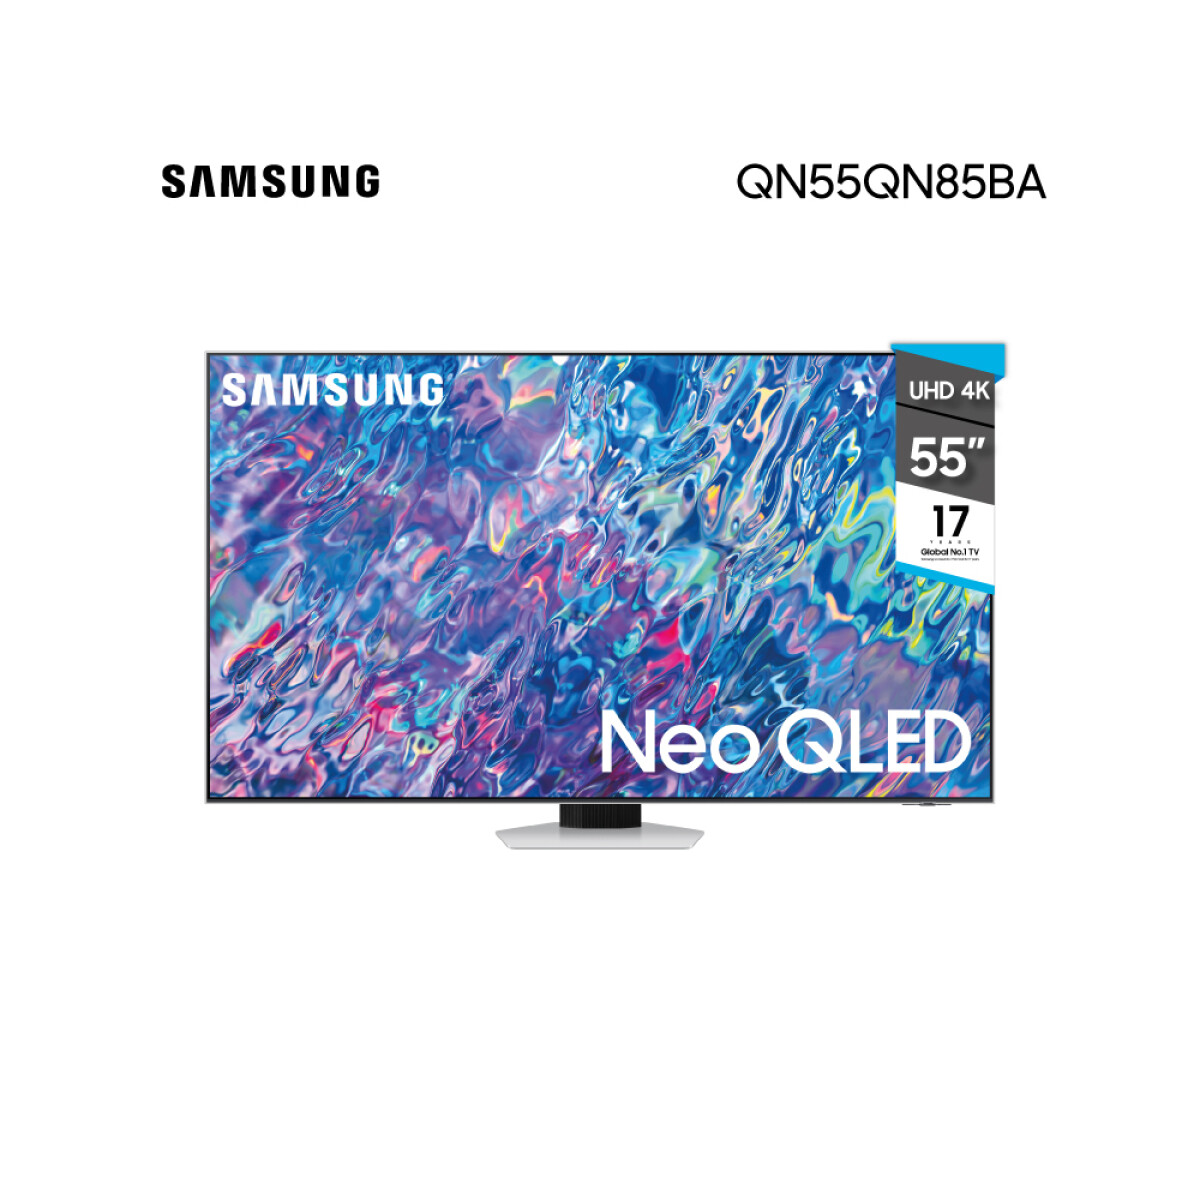 Smart TV NEO QLED Samsung QN55QN85BA 55" UHD 4K 